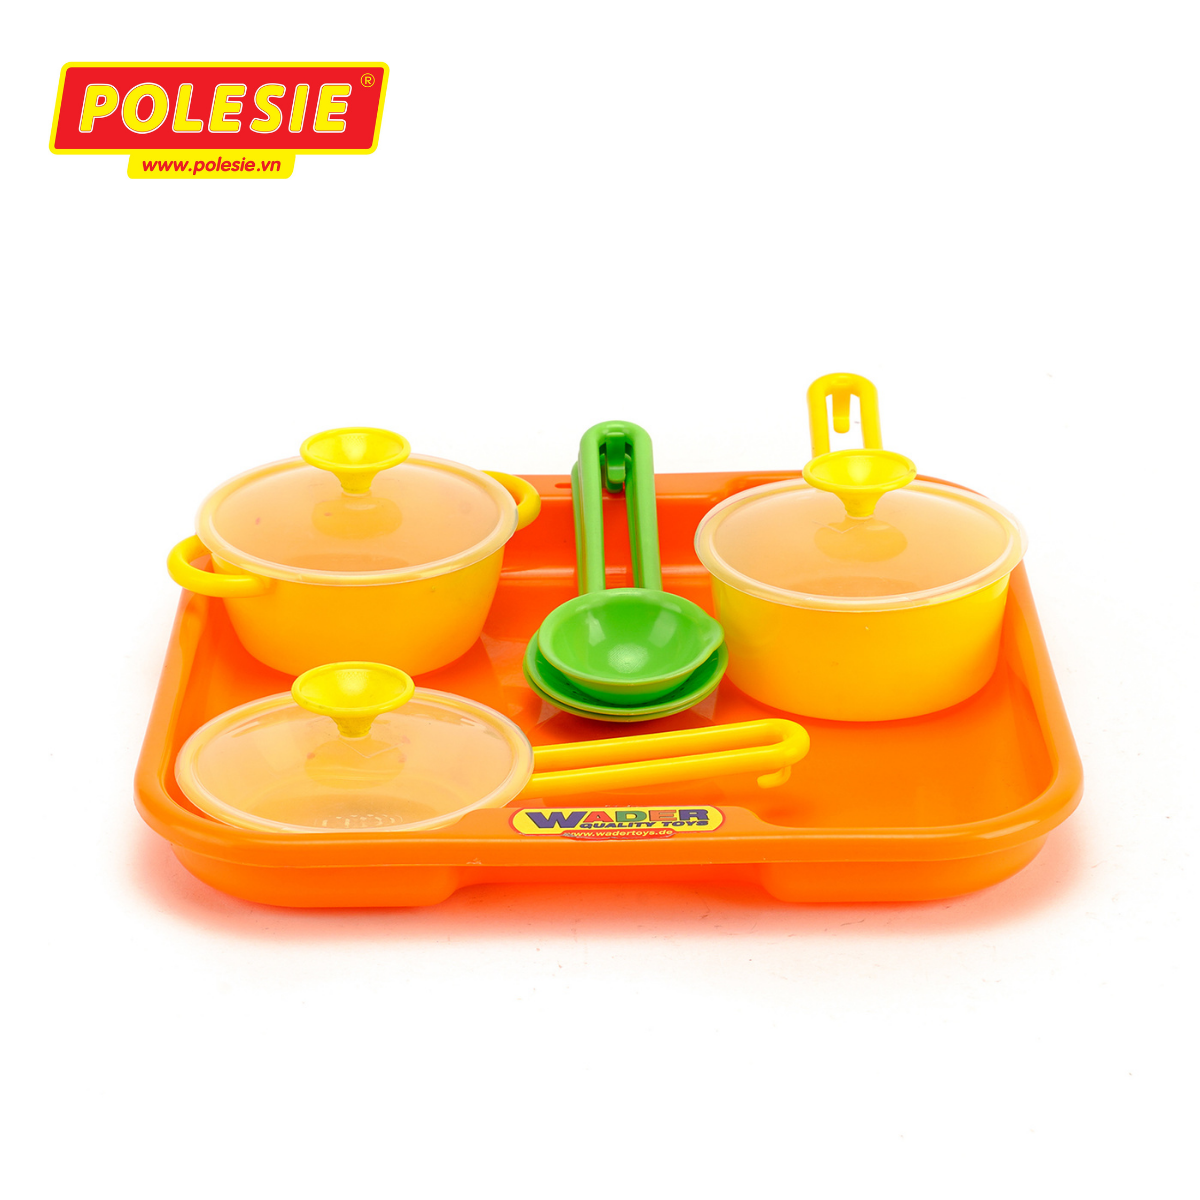 Bộ đồ chơi nấu ăn cho bé Trice Polesie 40732 - Hàng chính hãng nhập khẩu châu âu